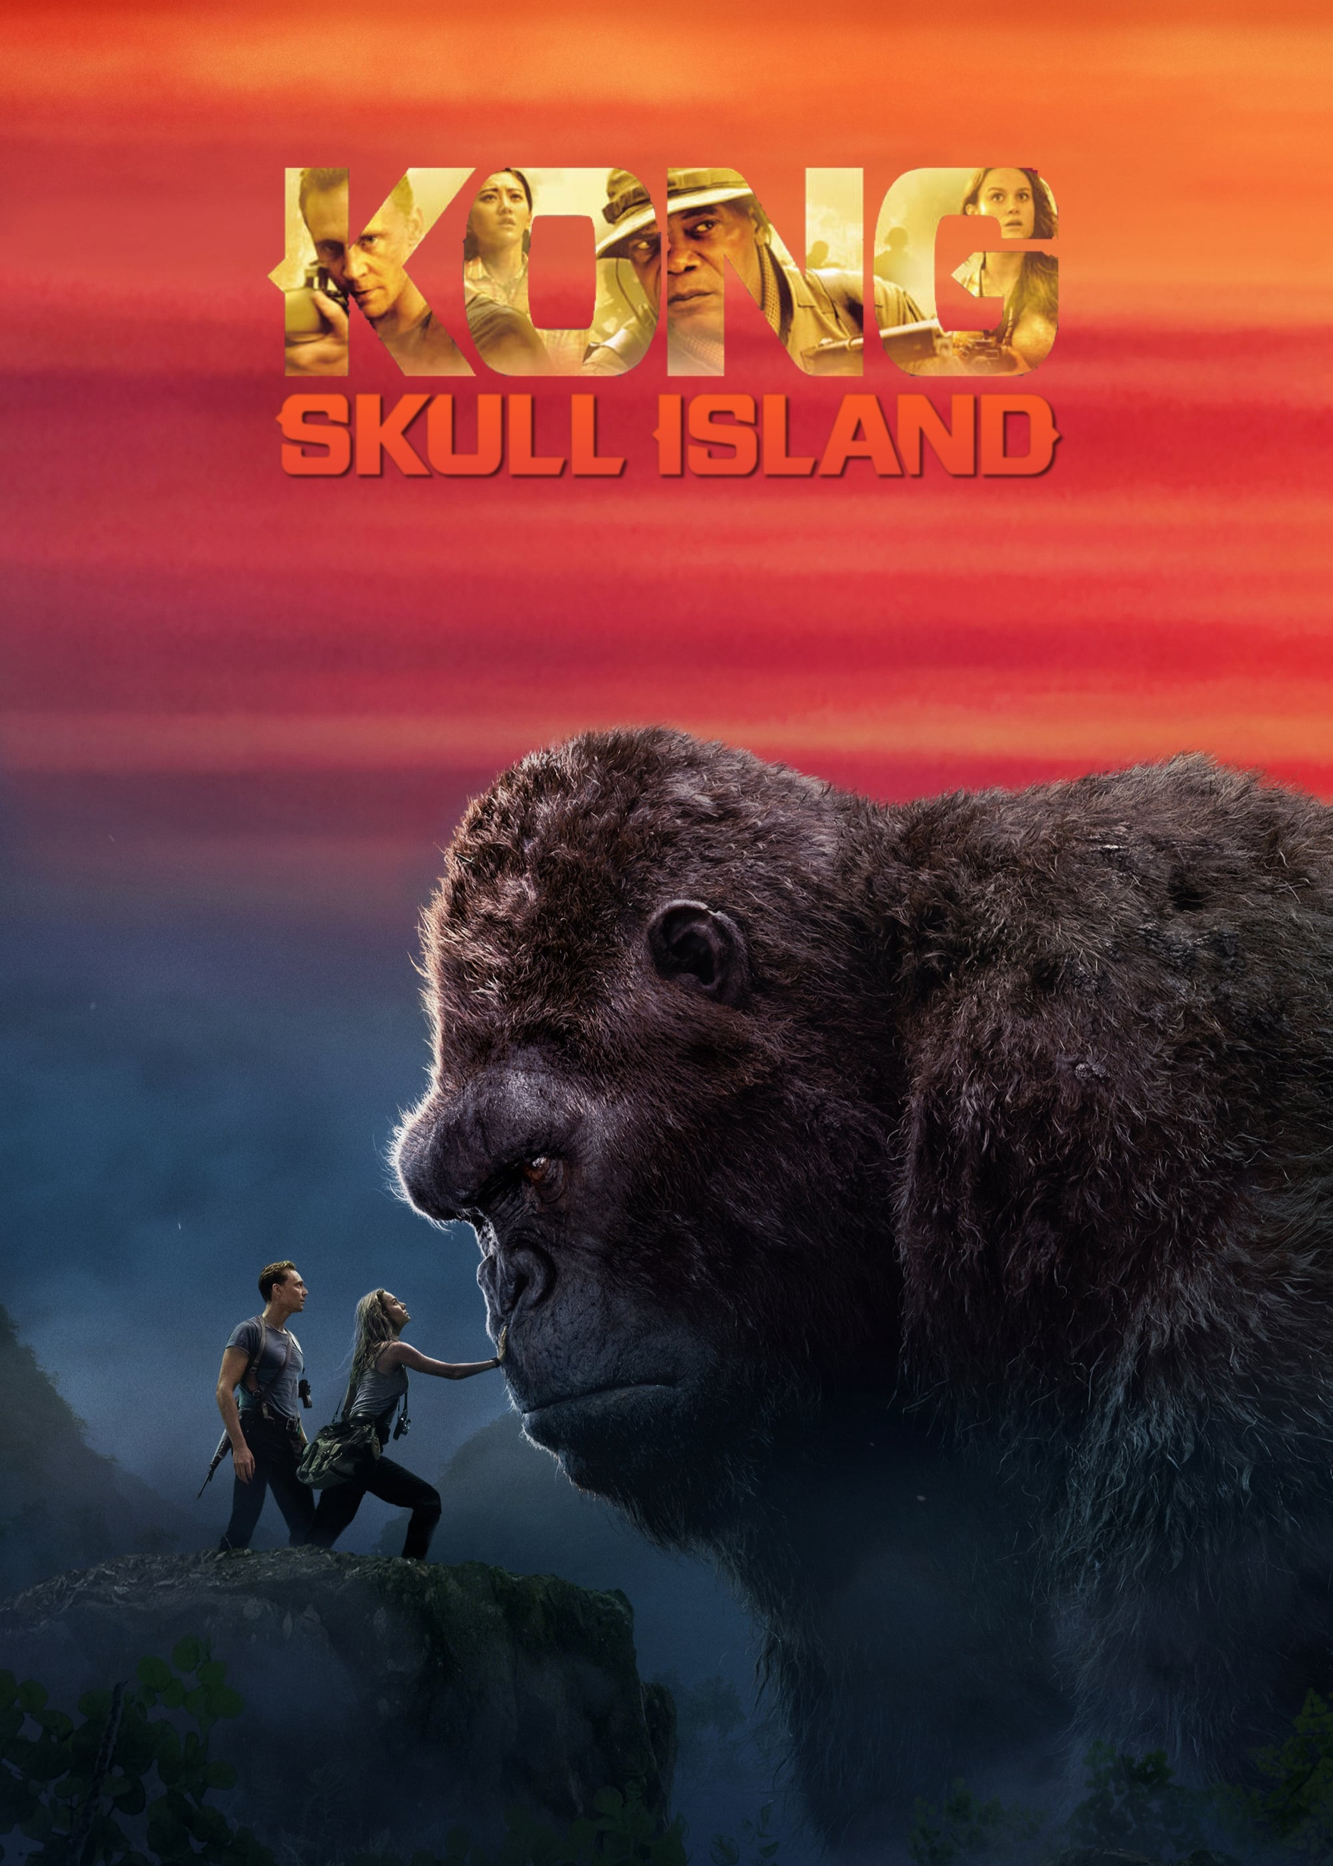 Xem Phim Kong: Đảo Đầu Lâu (Kong: Skull Island)